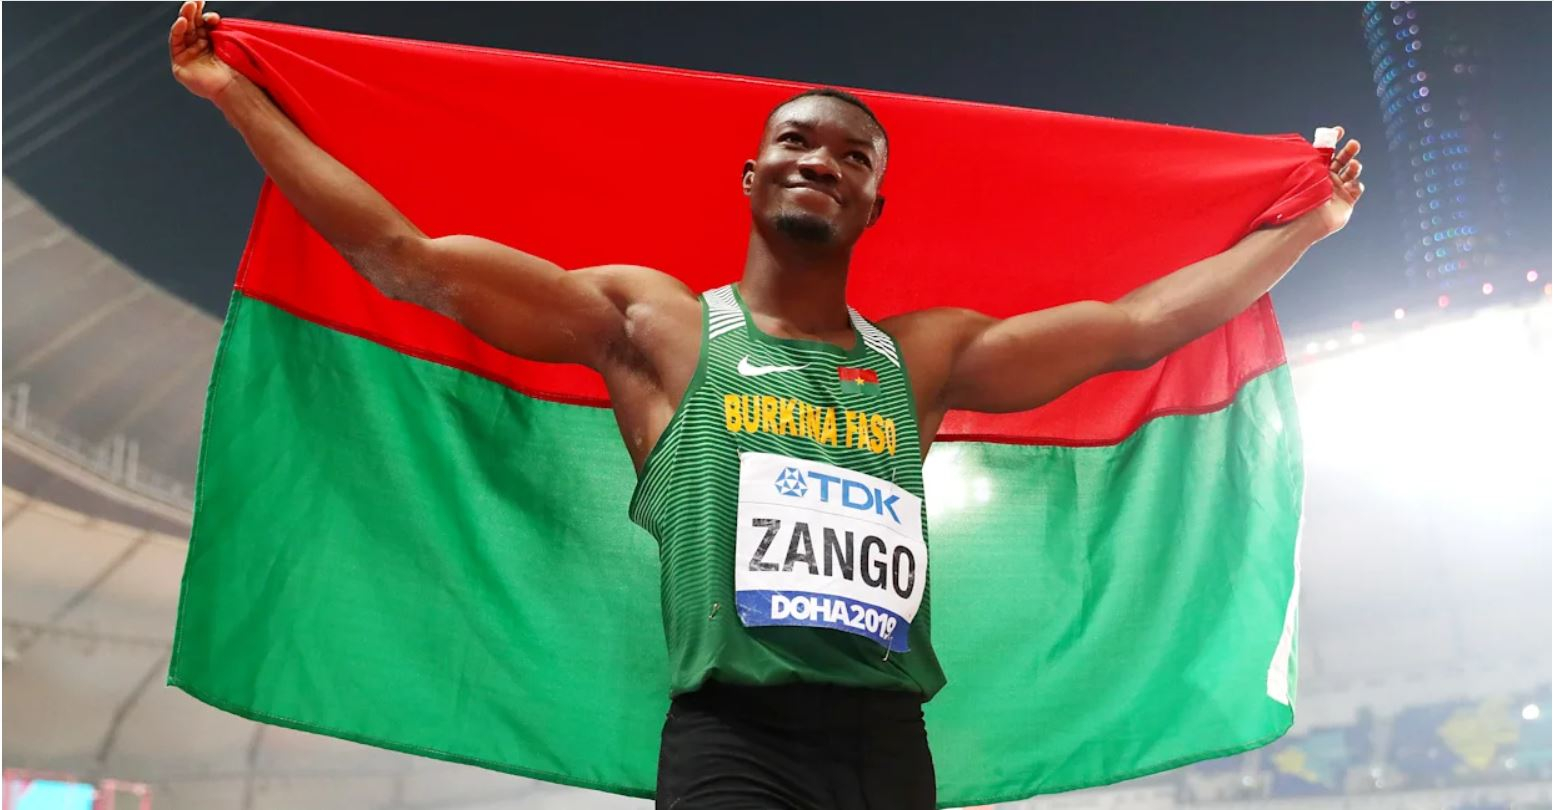 Championnat du monde d’athlétisme : Le rêve en or de Hugues Fabrice Zango